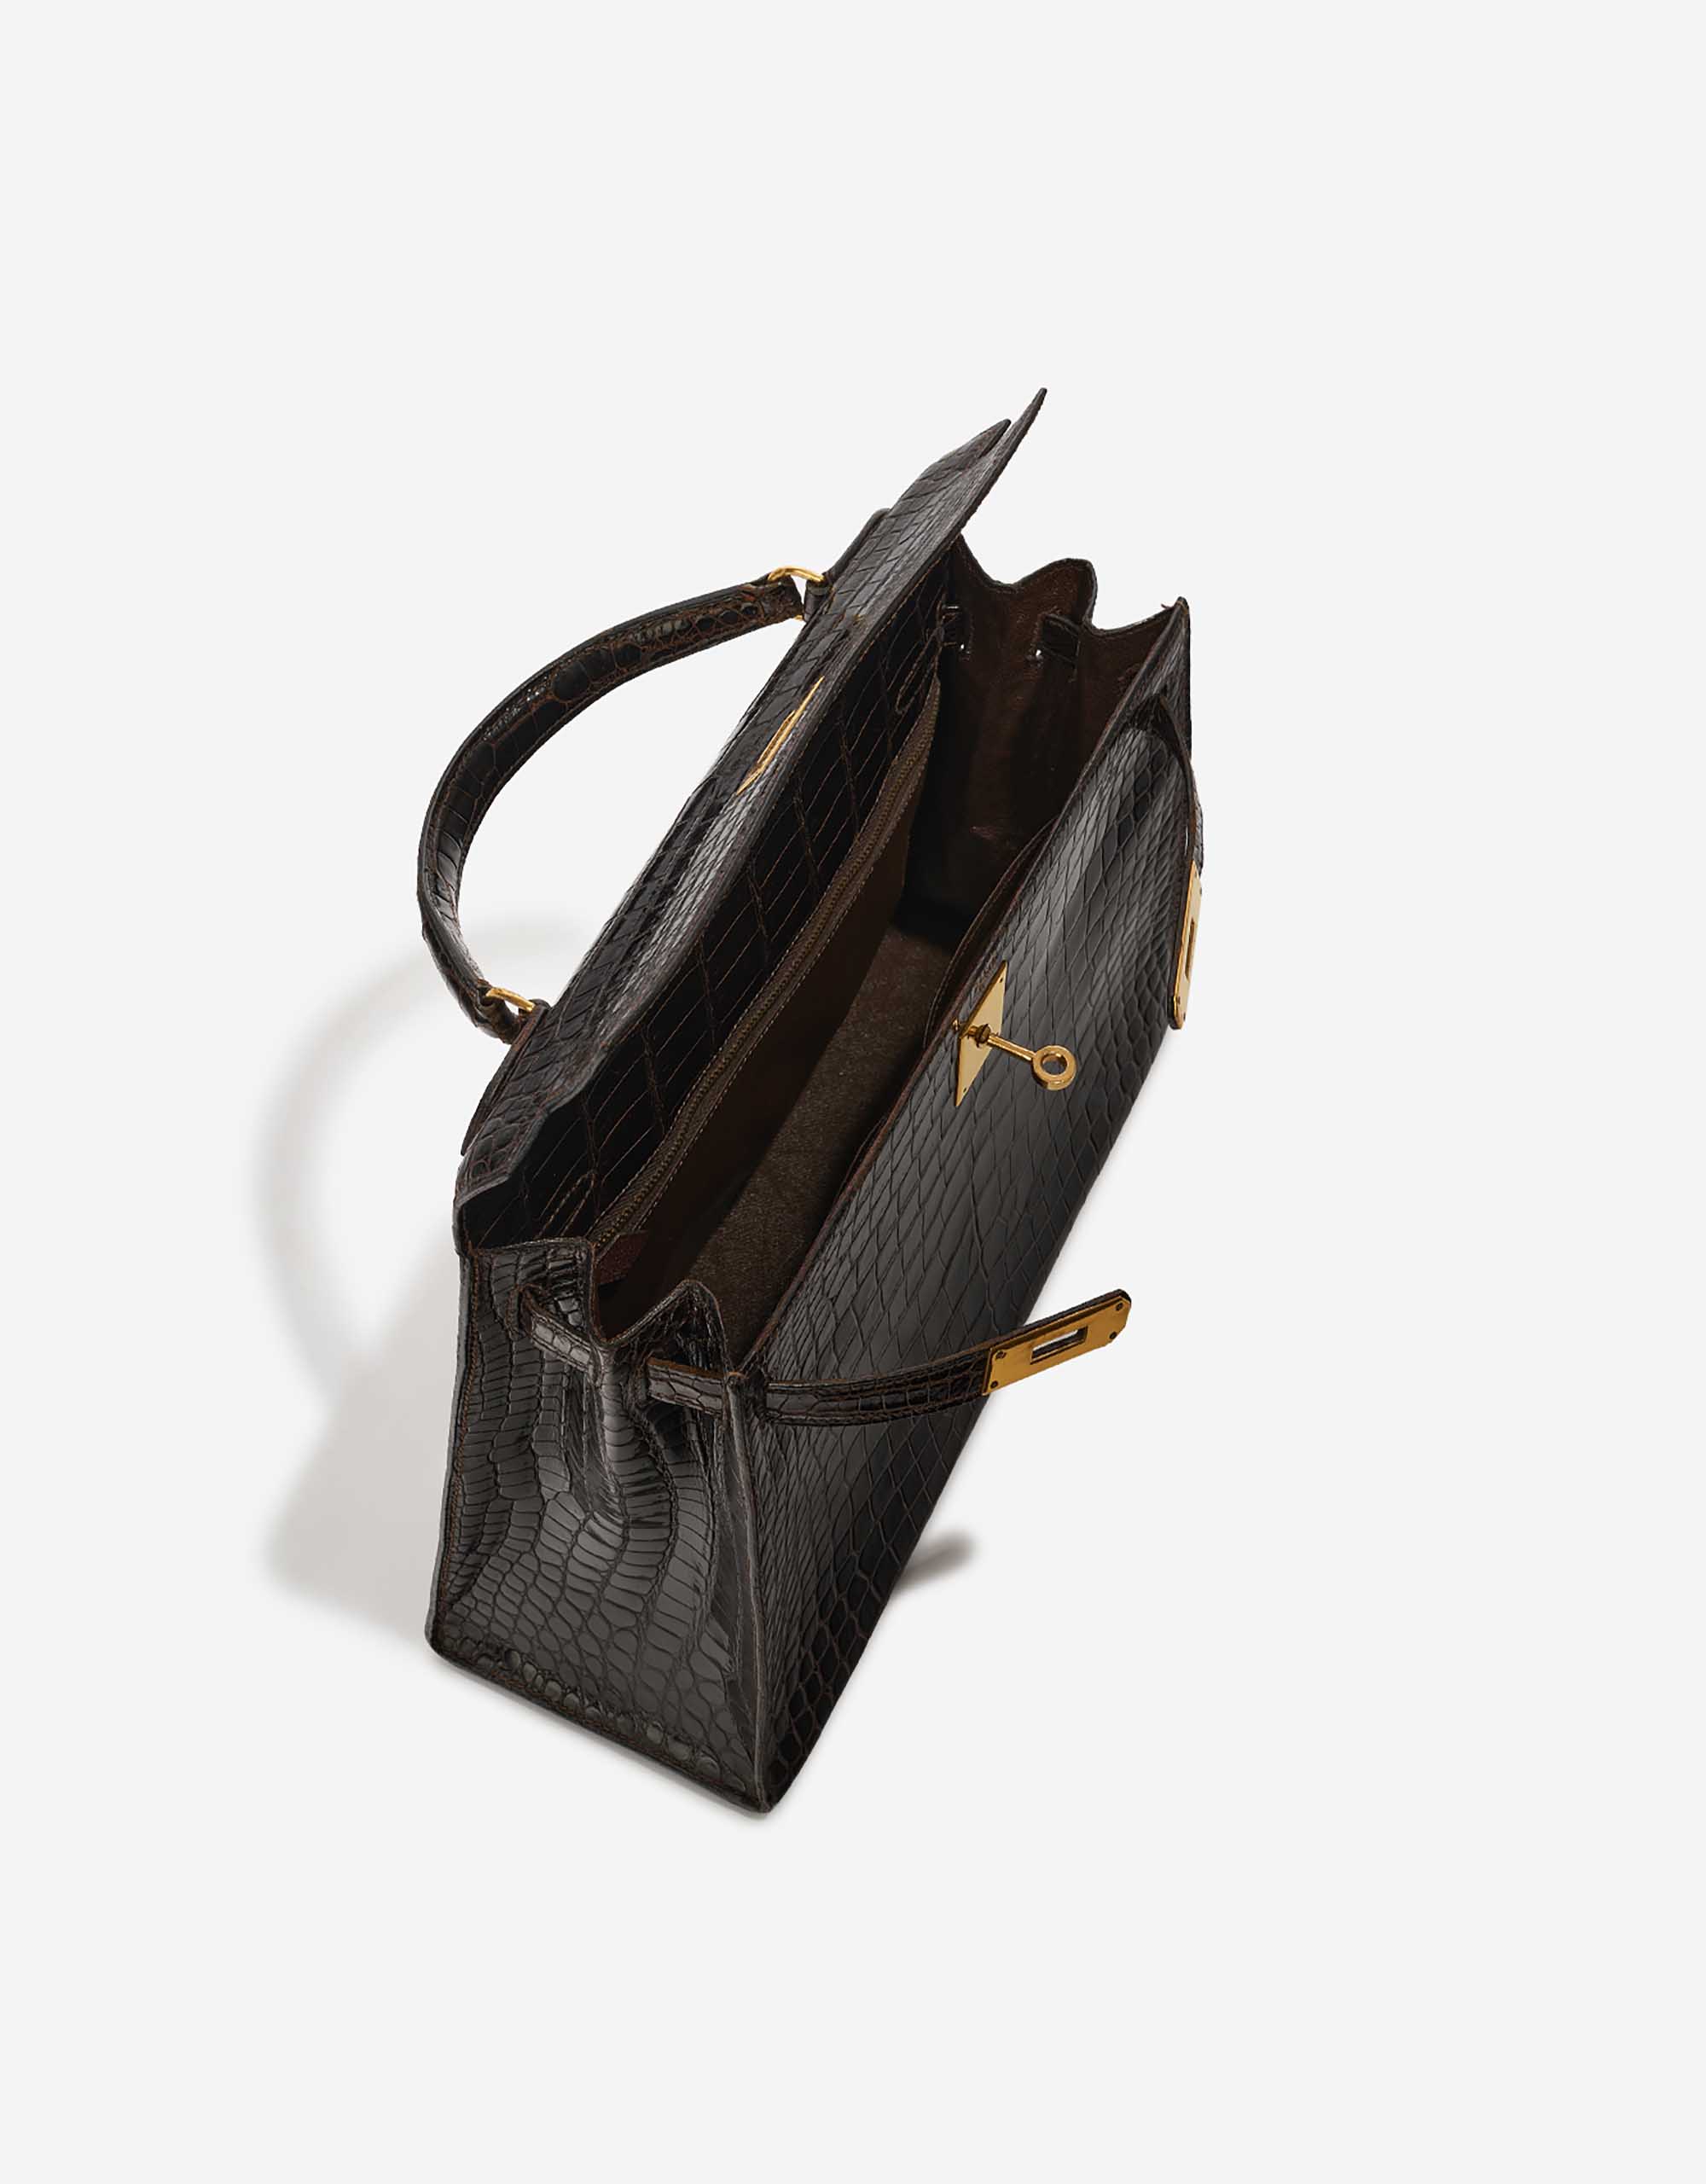 Pre-owned Hermès Tasche Kelly 32 Porosus Crocodile Dark Brown Brown Inside | Verkaufen Sie Ihre Designer-Tasche auf Saclab.com